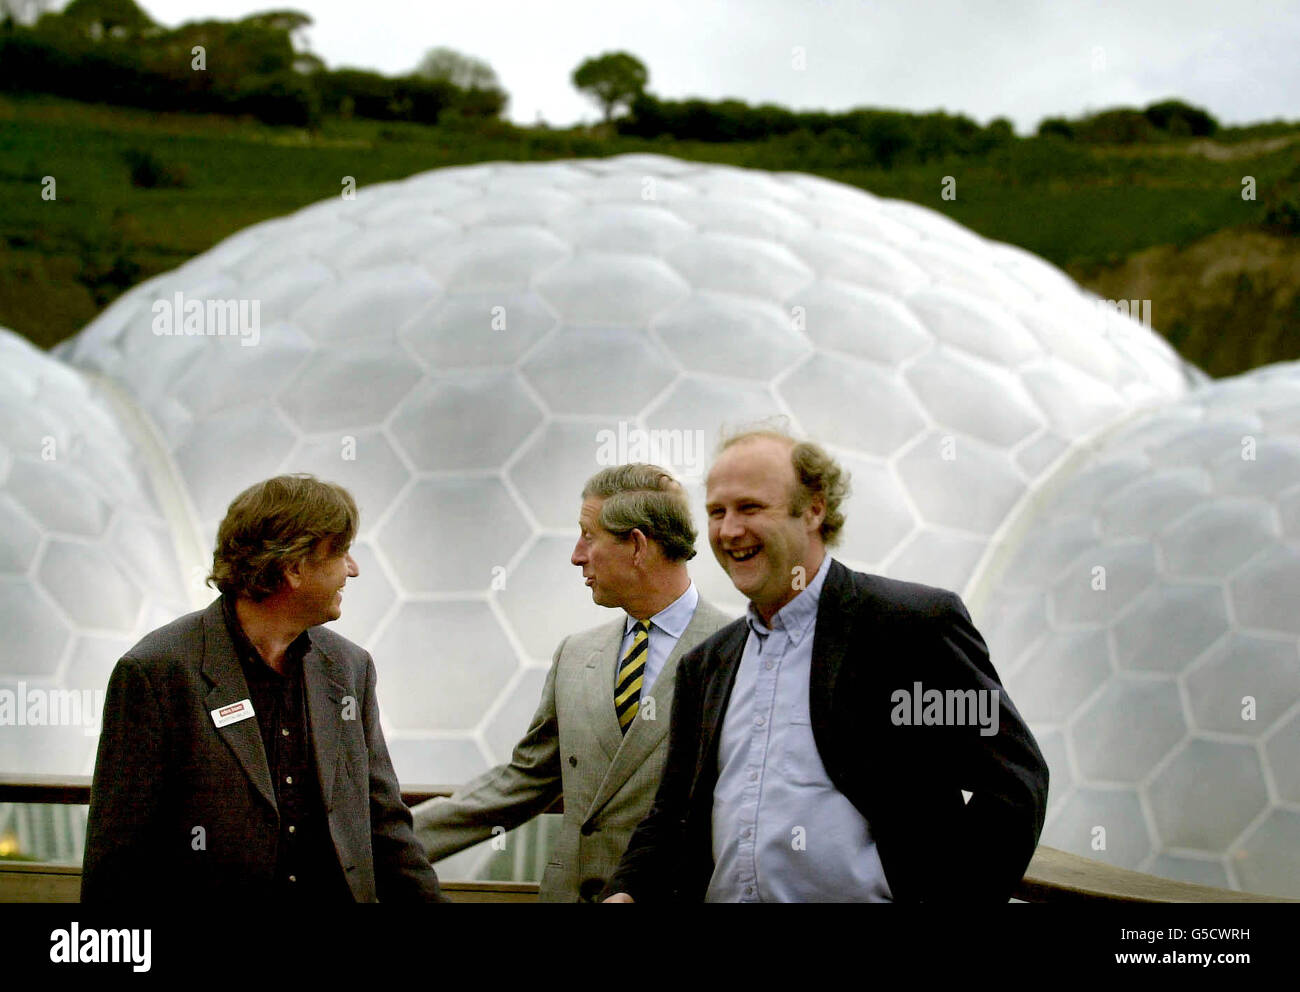 Il Principe del Galles (centro) con Martin Miles - Project Director (a sinistra) e Tim Smit - Chief Executive di fronte ai Biomes durante la sua visita all'Eden Project a Bodelva, Cornovaglia. Foto Stock